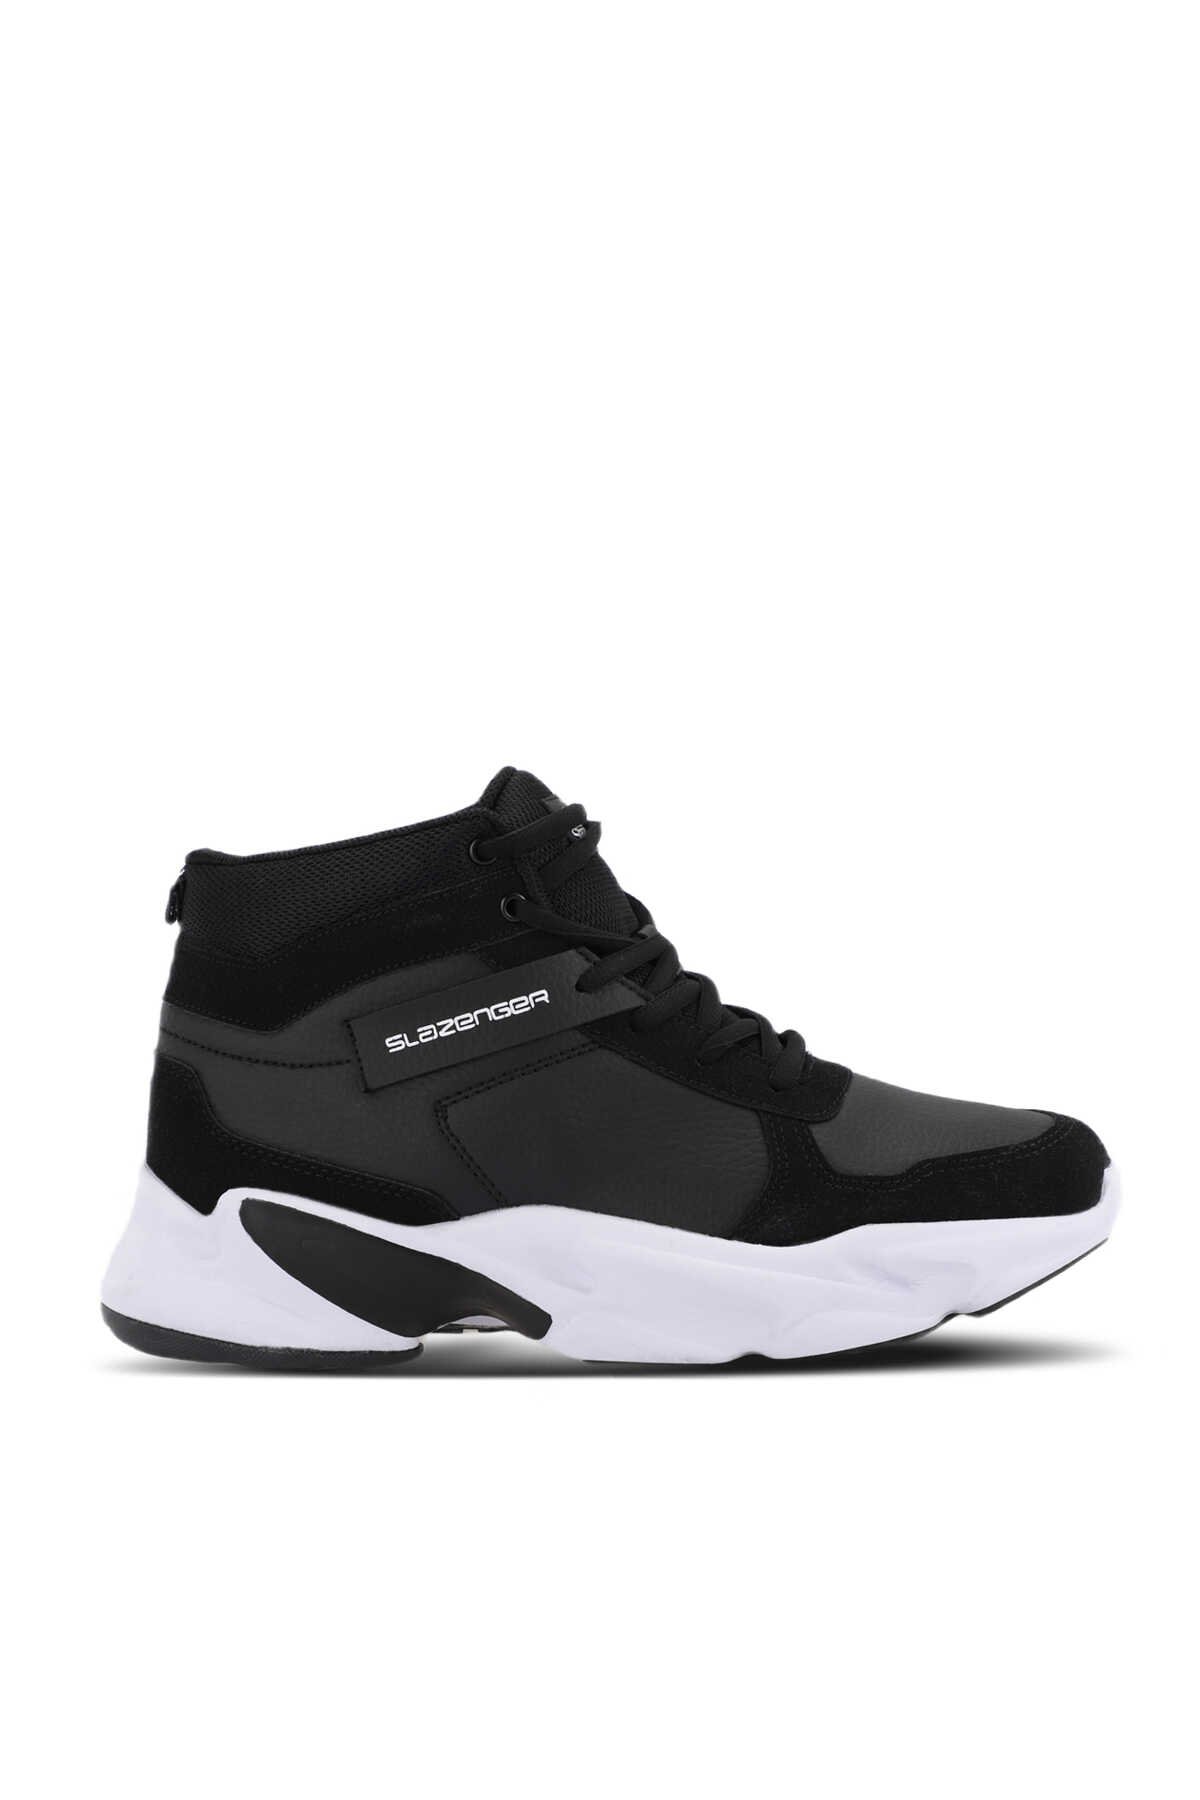 Slazenger - Slazenger PATTERN Sneaker Kadın Ayakkabı Siyah / Beyaz